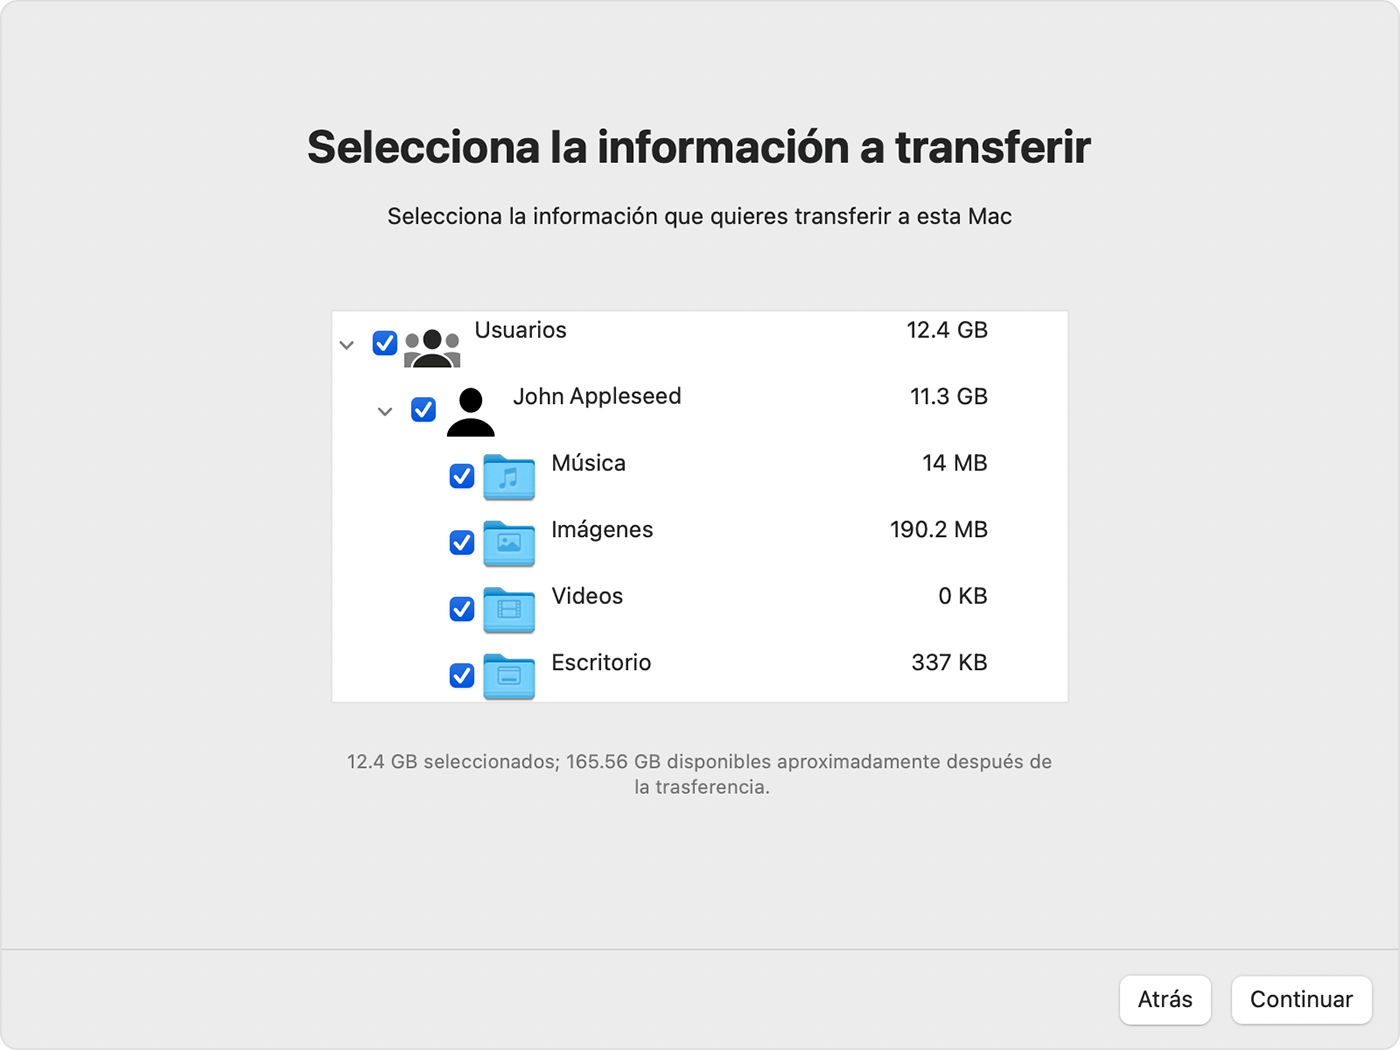 Asistente de migración en la Mac: Selecciona la información que desees transferir